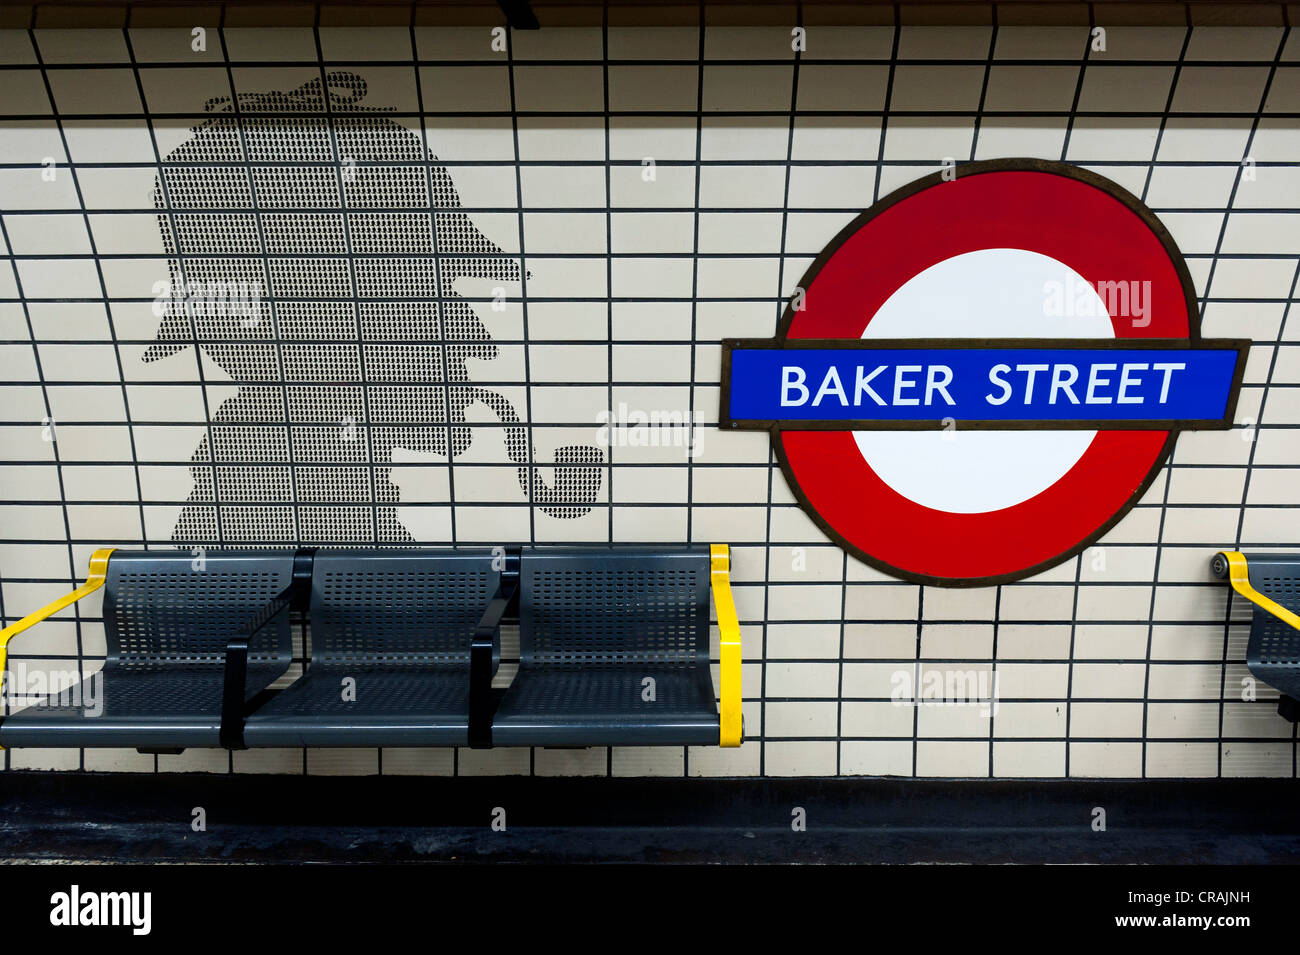 La station de métro Baker Street, silhouette de Sherlock Holmes, Londres, Angleterre, Royaume-Uni, Europe Banque D'Images